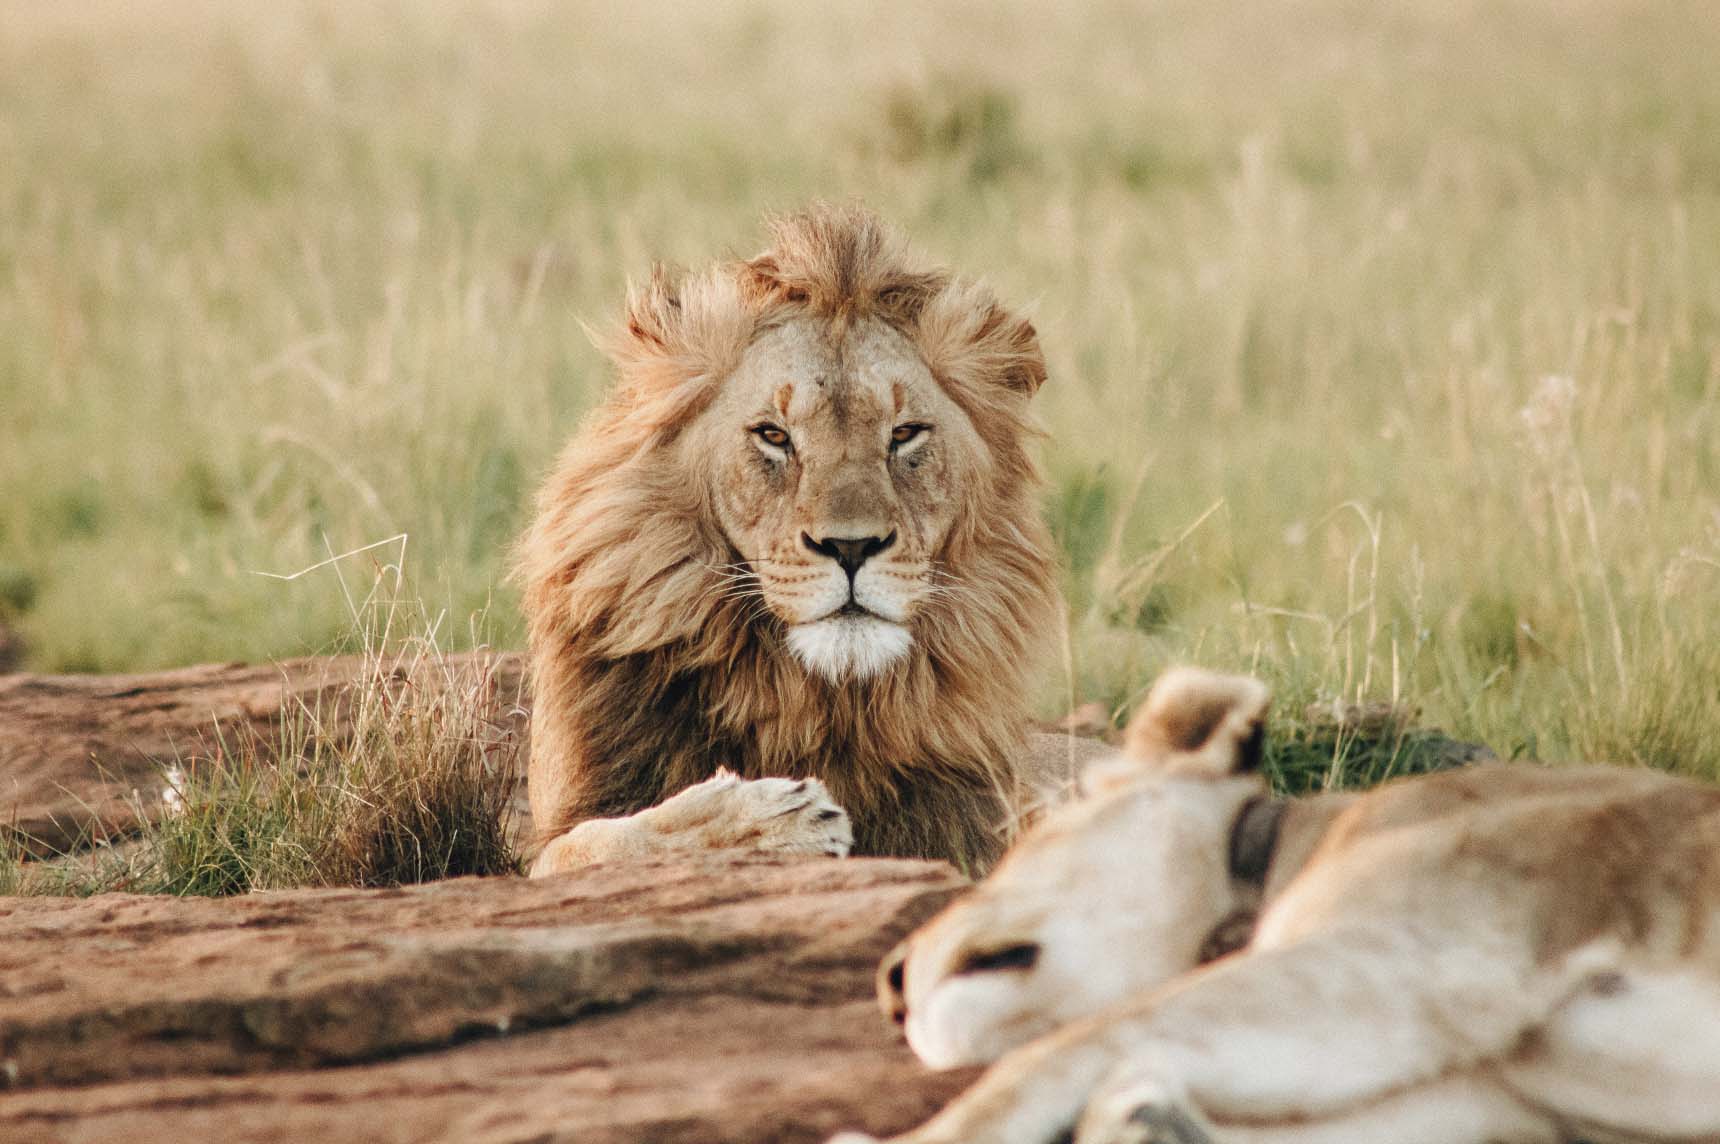 Des lions enfermés et élevés pour être chassés par de riches touristes Image-78